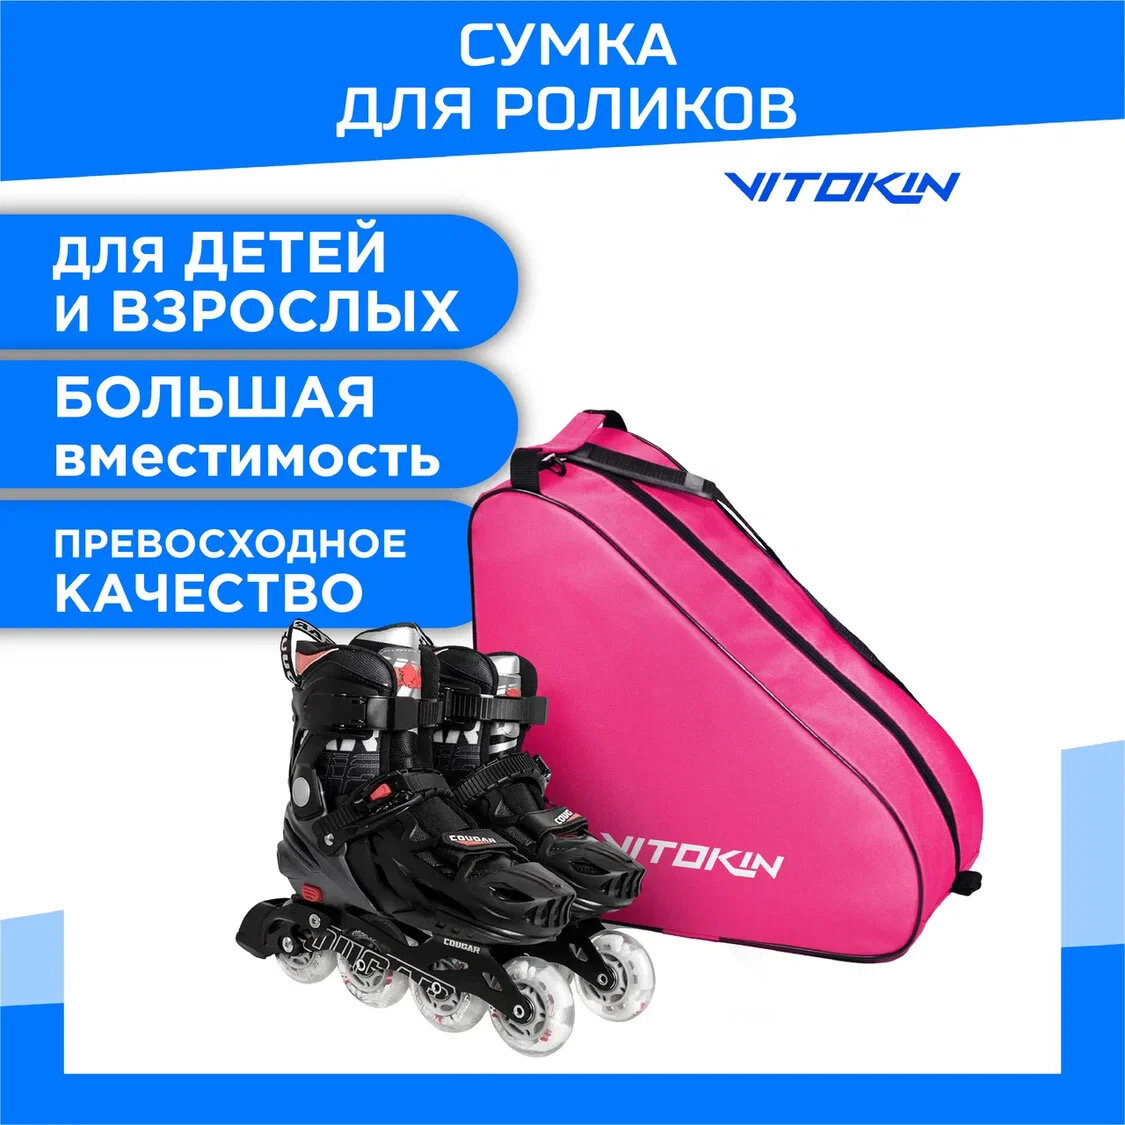 Сумка чехол для хоккейных и роликовых коньков VITOKIN, цвет розовый